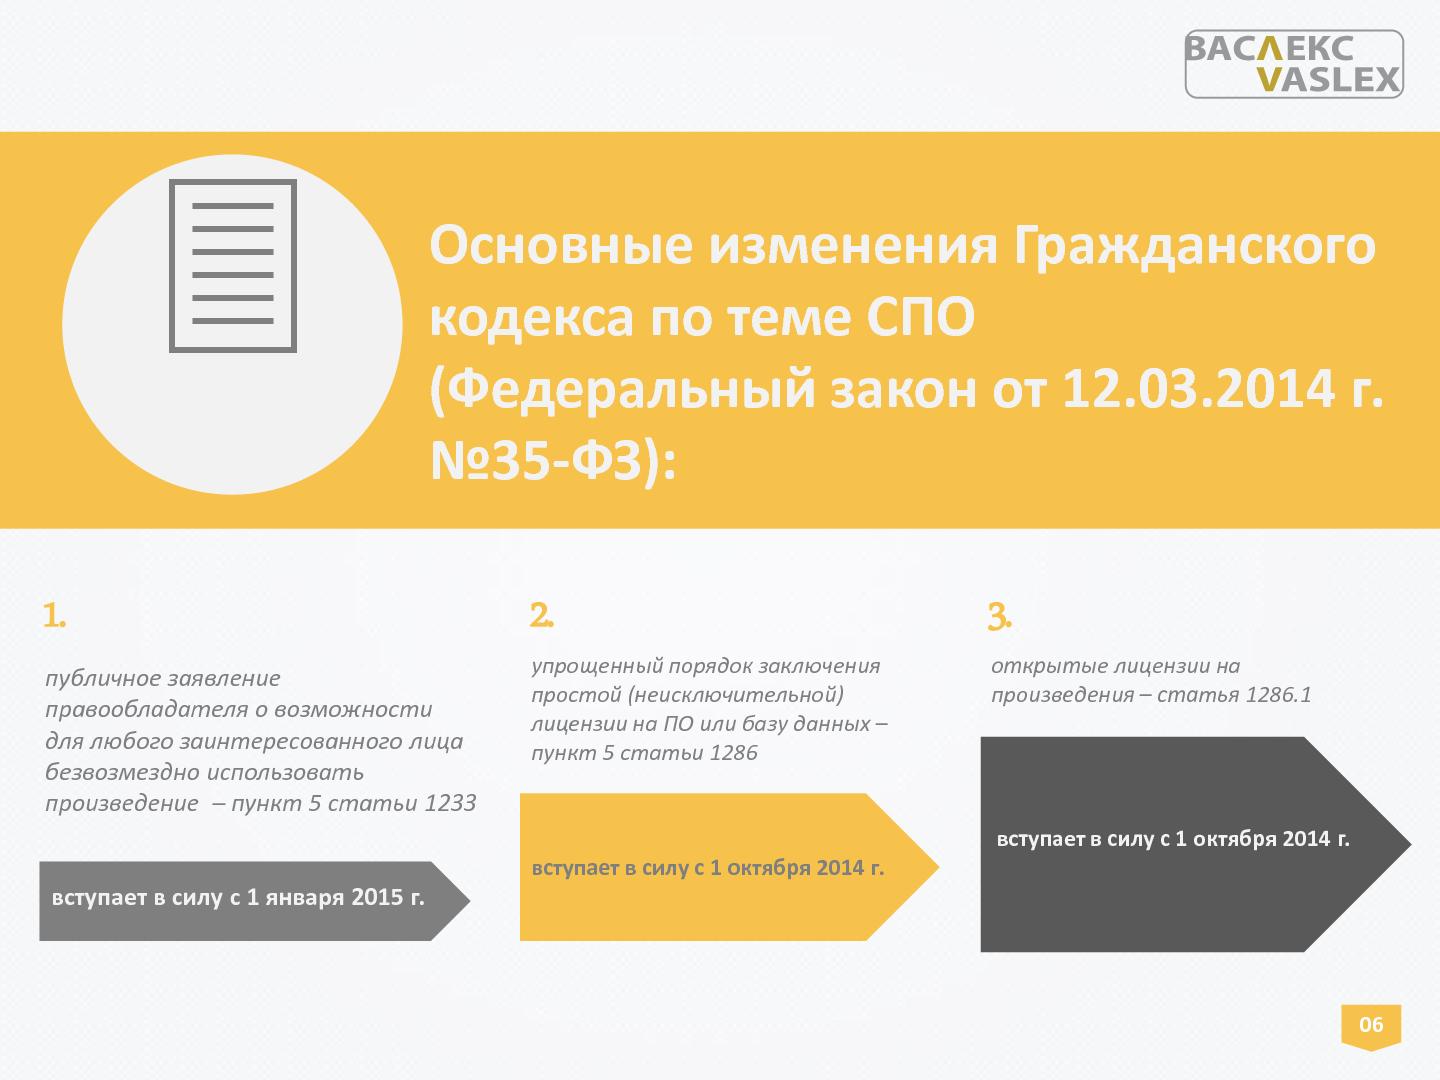 Файл:Правовое регулирование СПО по российскому законодательству с учетом изменений согласно Федеральному закону 35-ФЗ.pdf